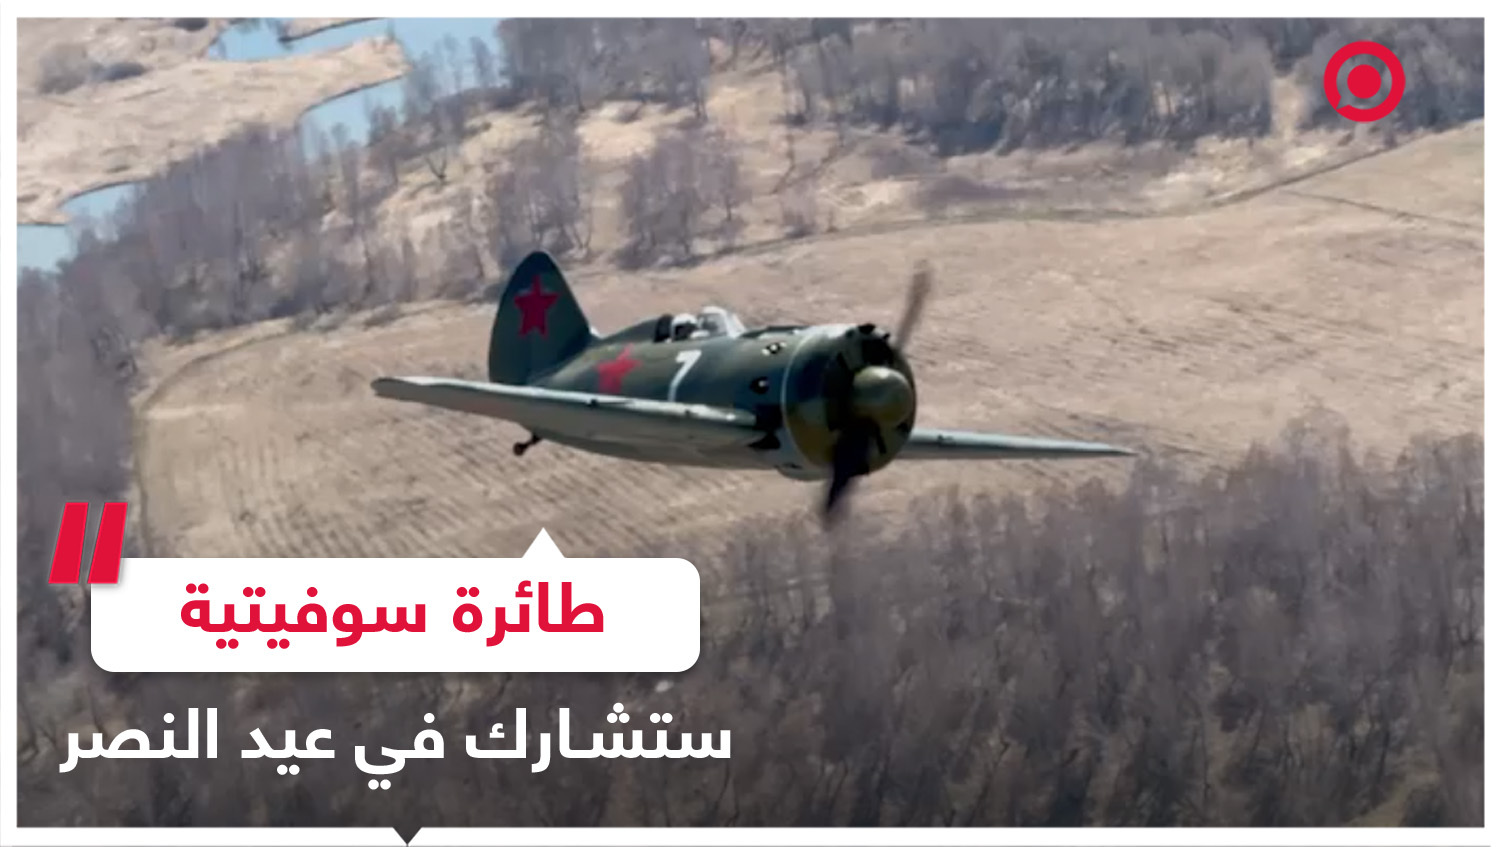 طائرة سوفيتية من الحرب العالمية الثانية تشارك في احتفالات عيد النصر